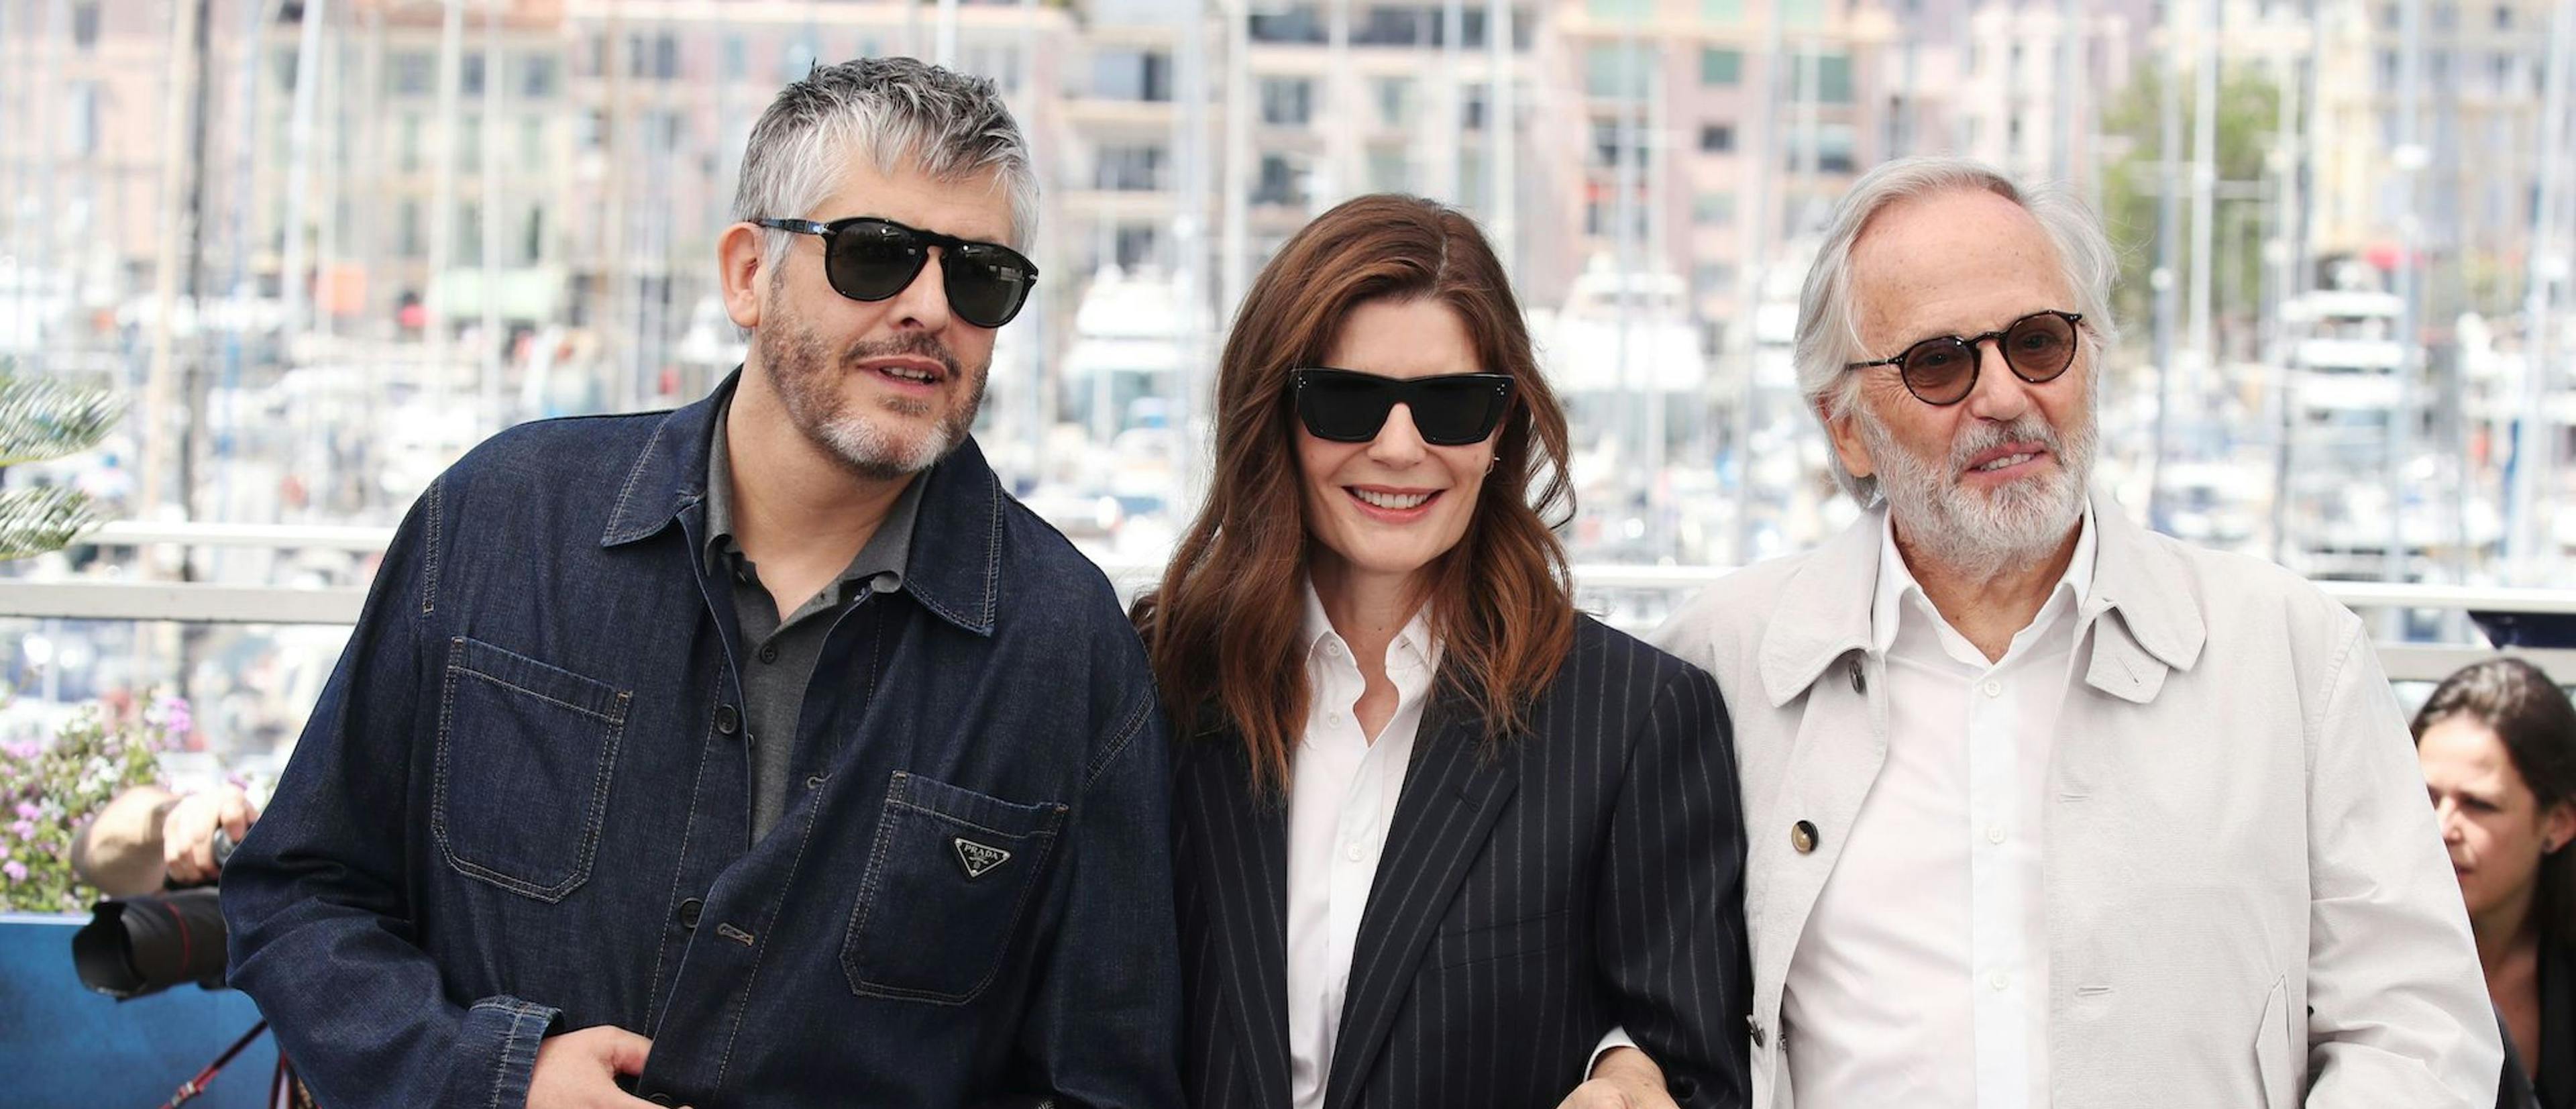 Christophe Honore, Chiara Mastroianni y Fabrice Luchini en el photocall de 'Marcello Mio' en la 77 edición de Cannes